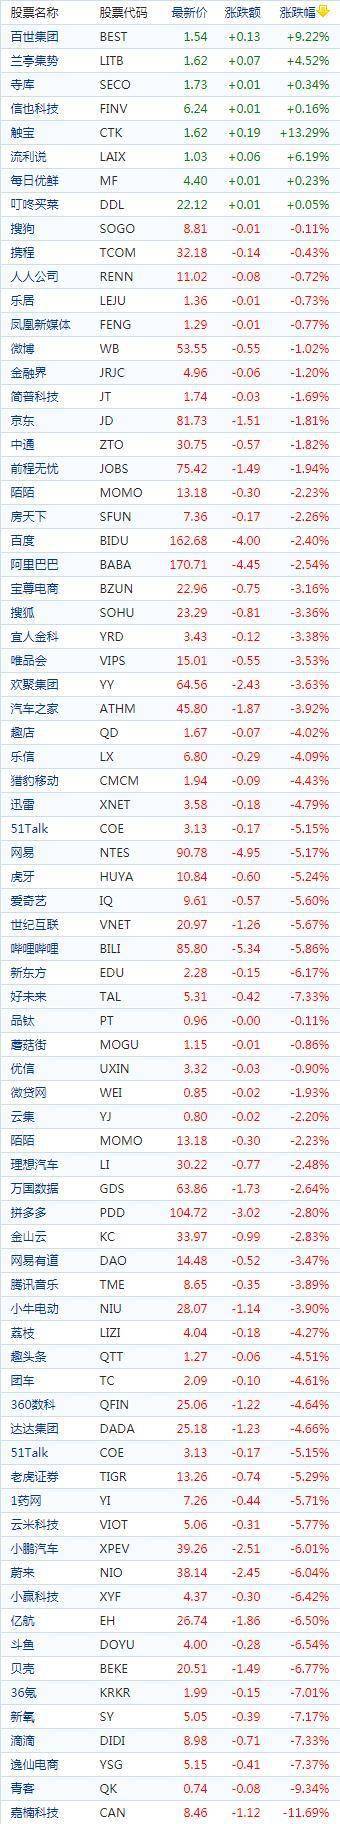 中国概念股周三收盘普遍下跌 教育股、WSB概念股价格随之走低